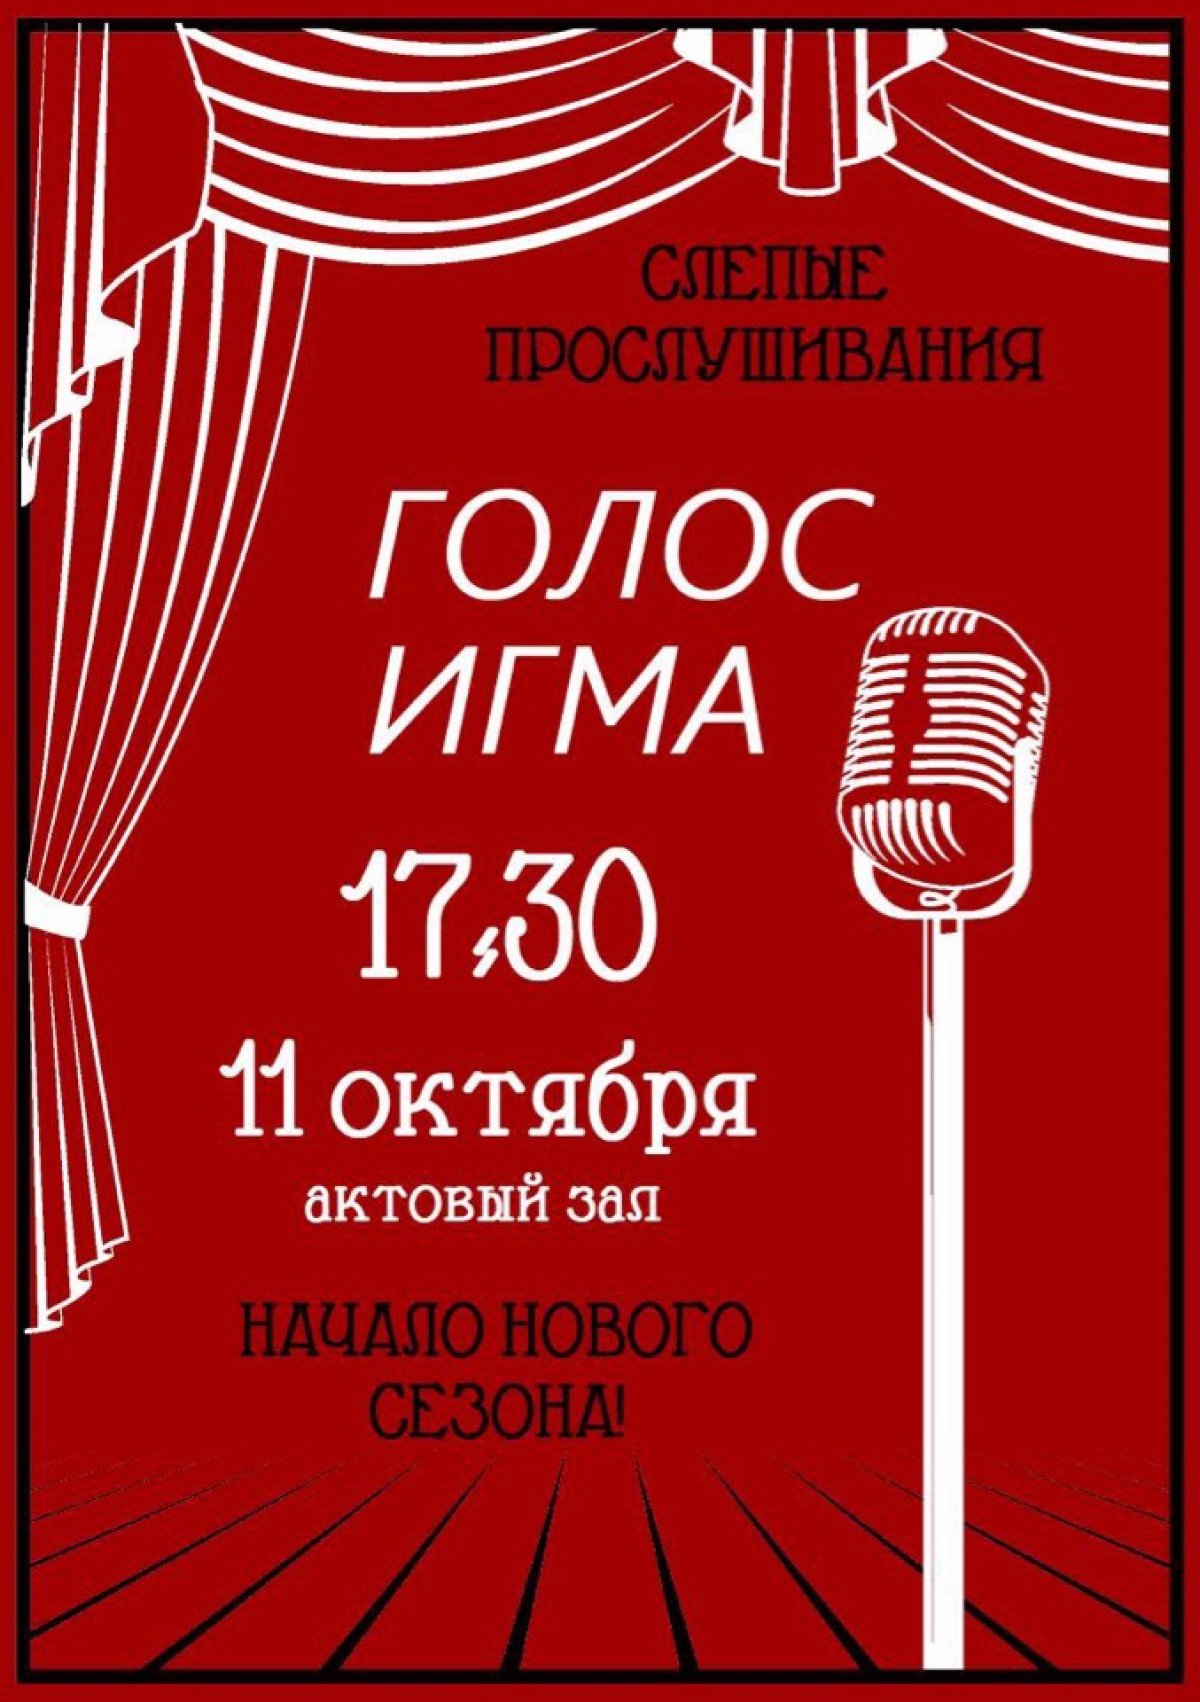 ⚡️Уже 11 октября начало нового сезона шоу Голос ИГМА!!!⚡️